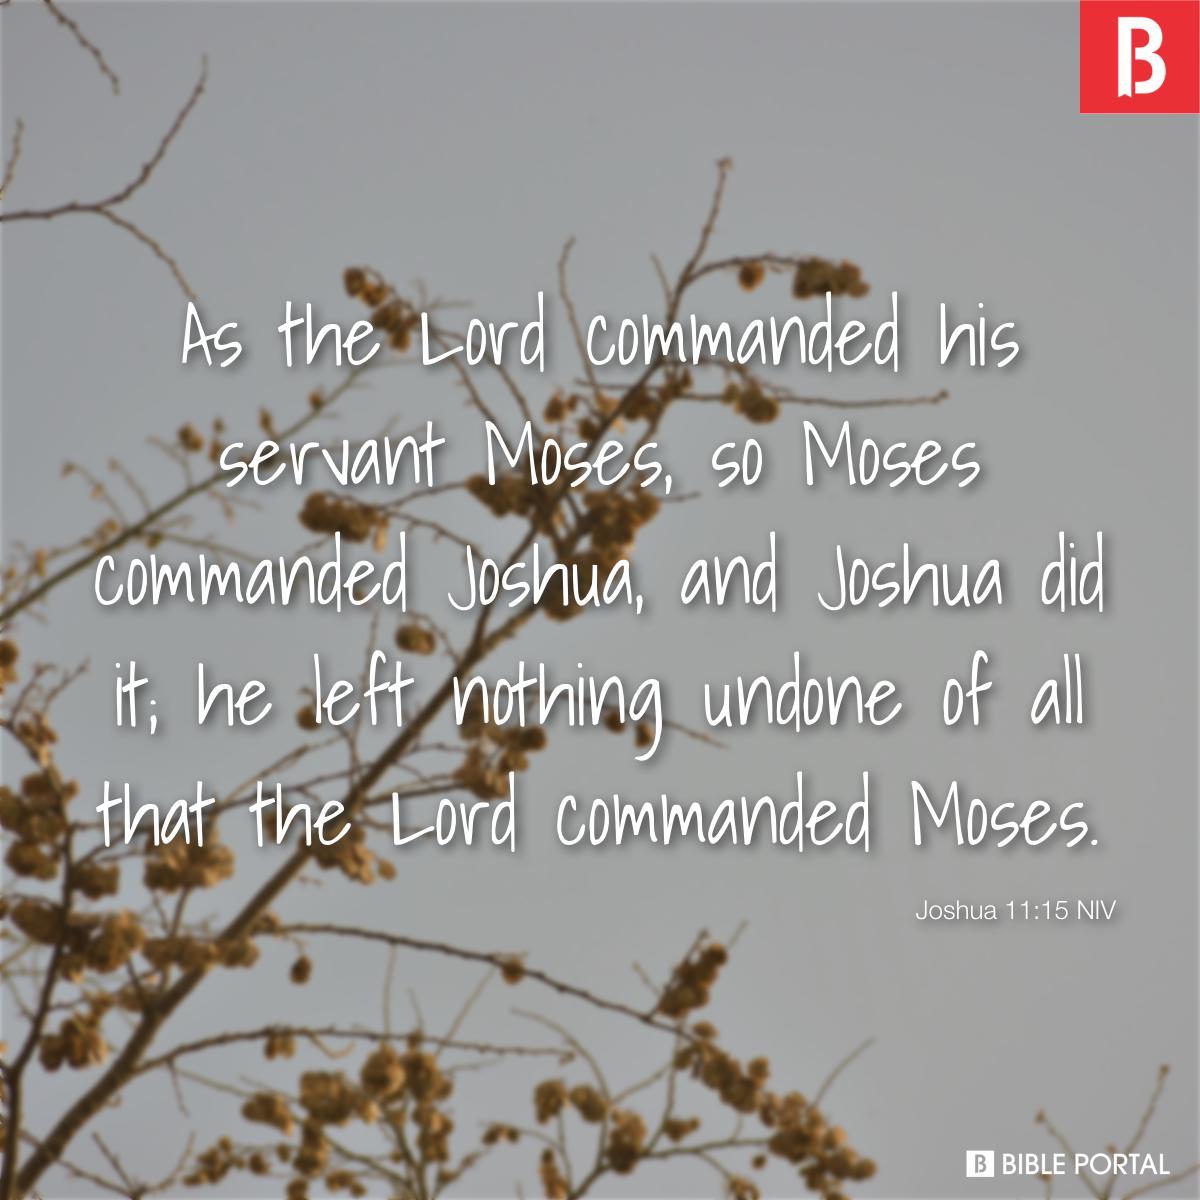 Joshua 11:15 NIV